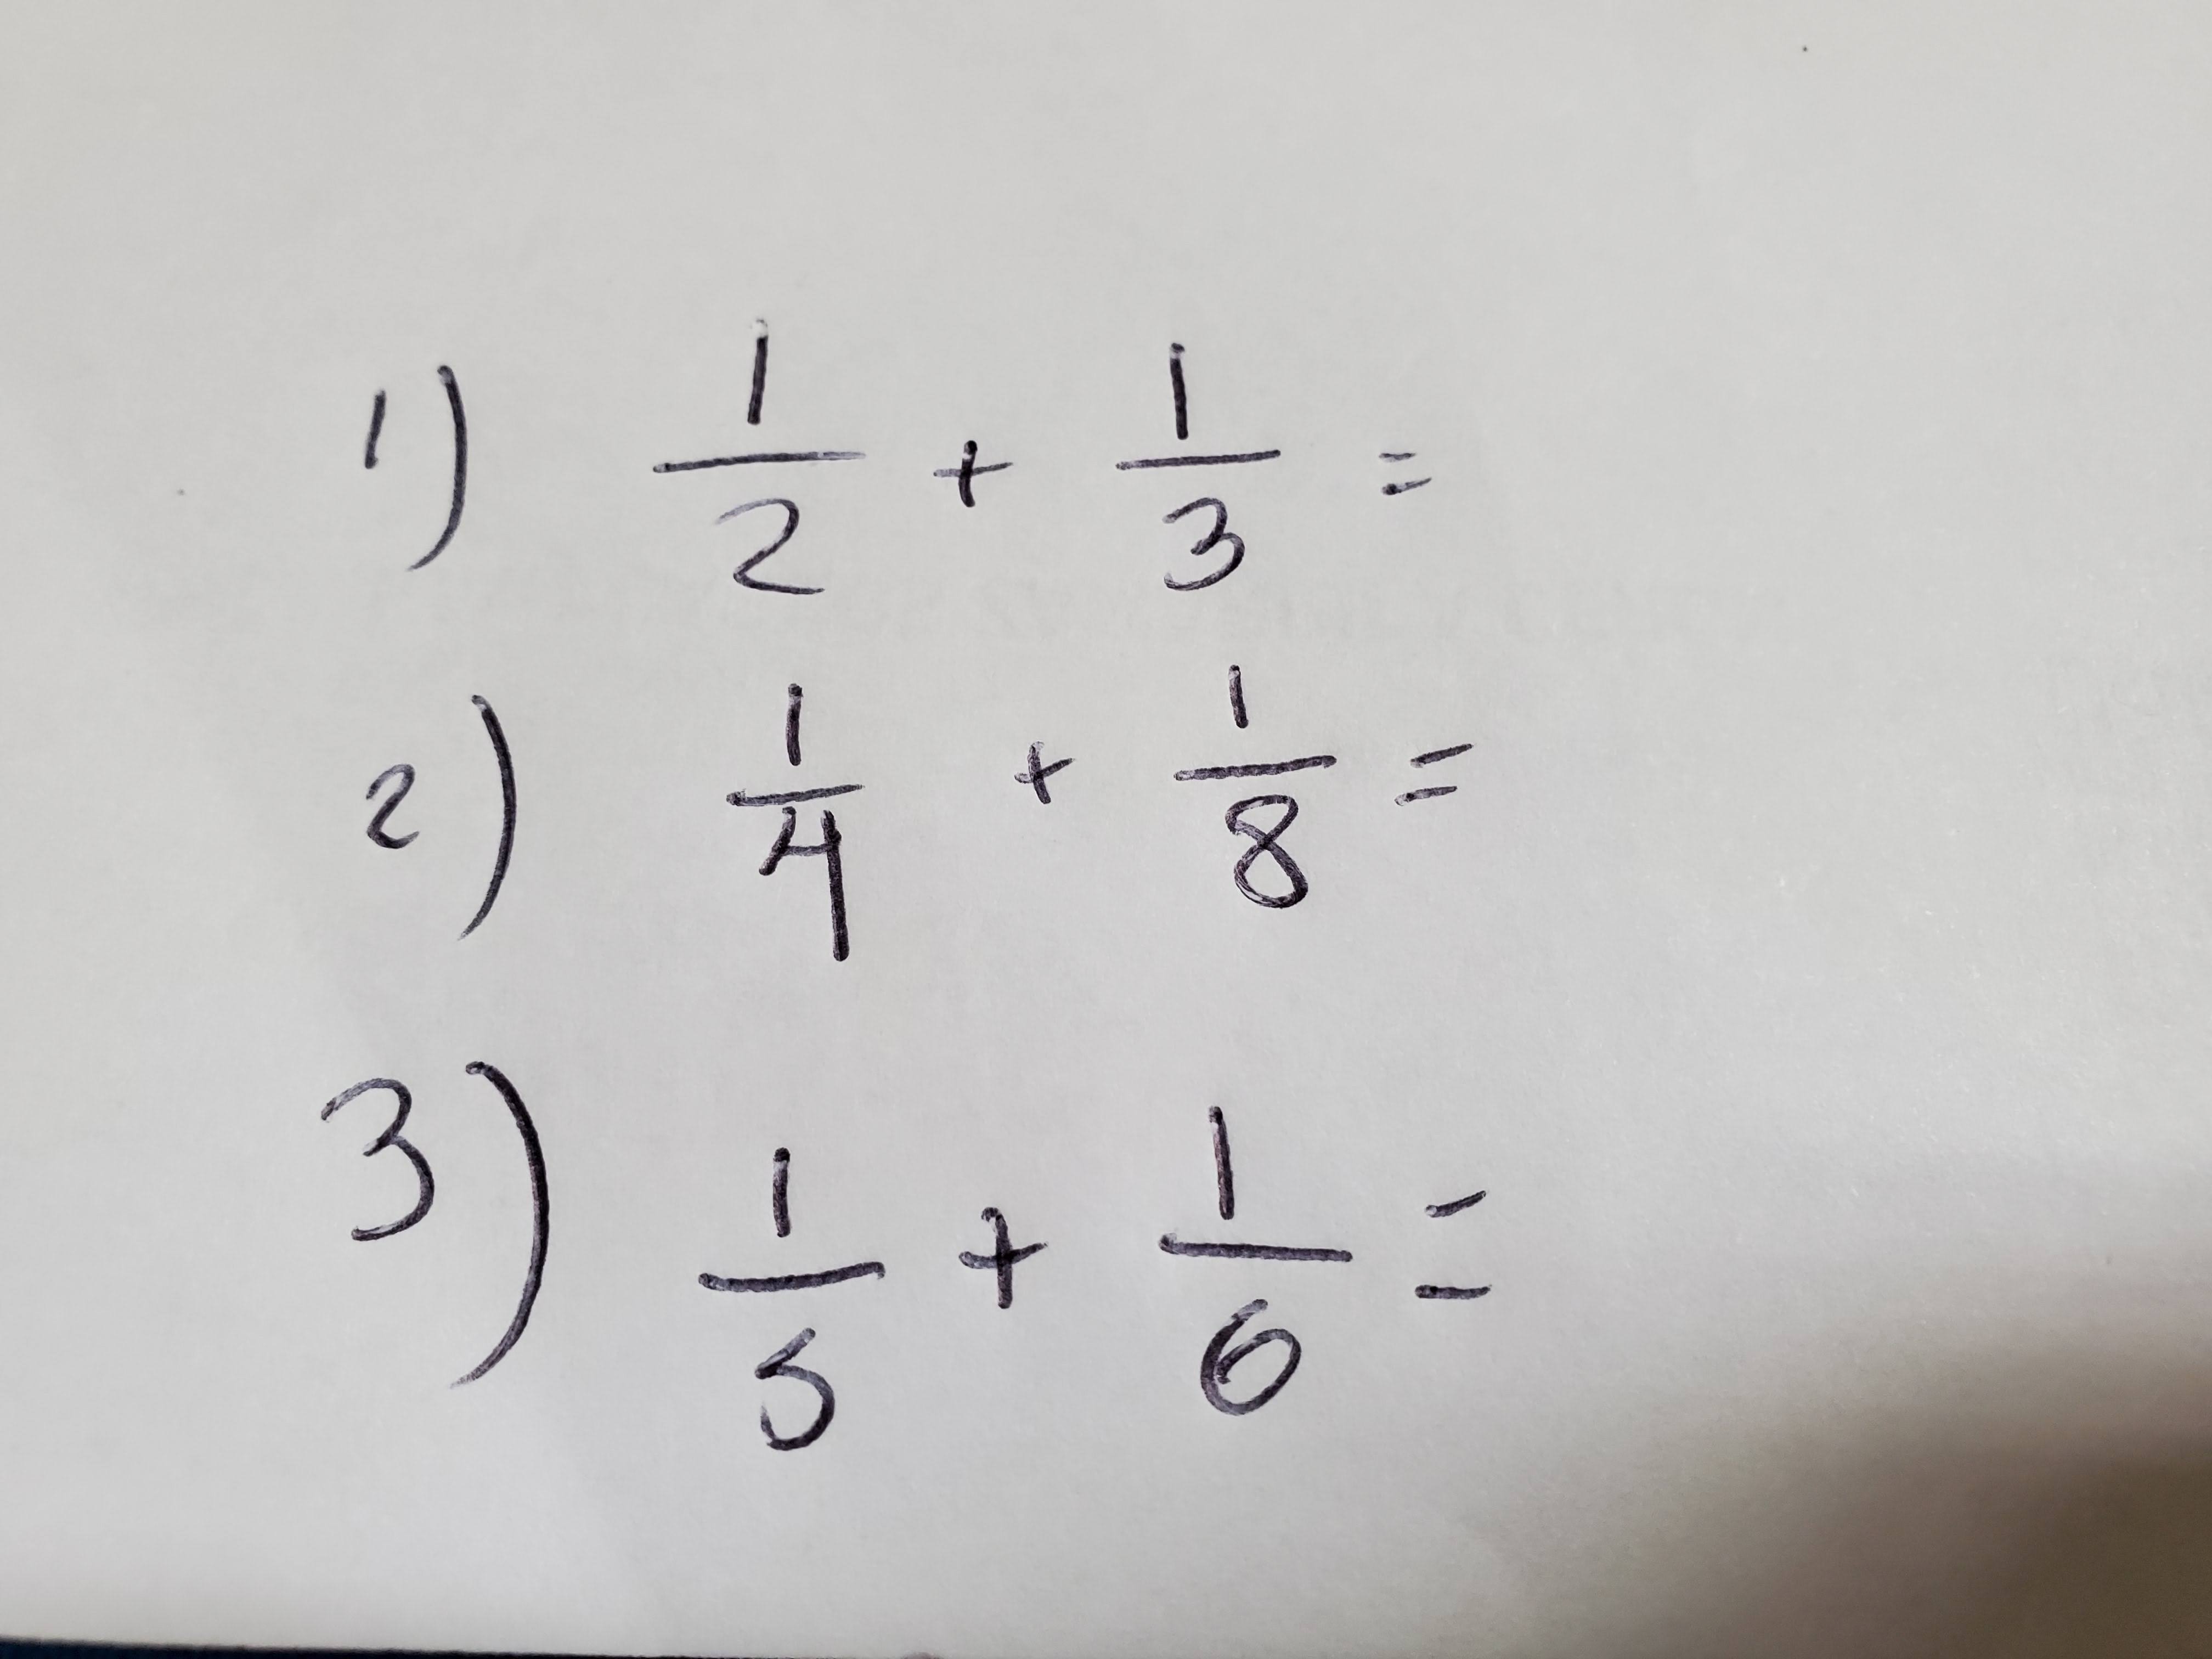 Quiz de Matematica Basica